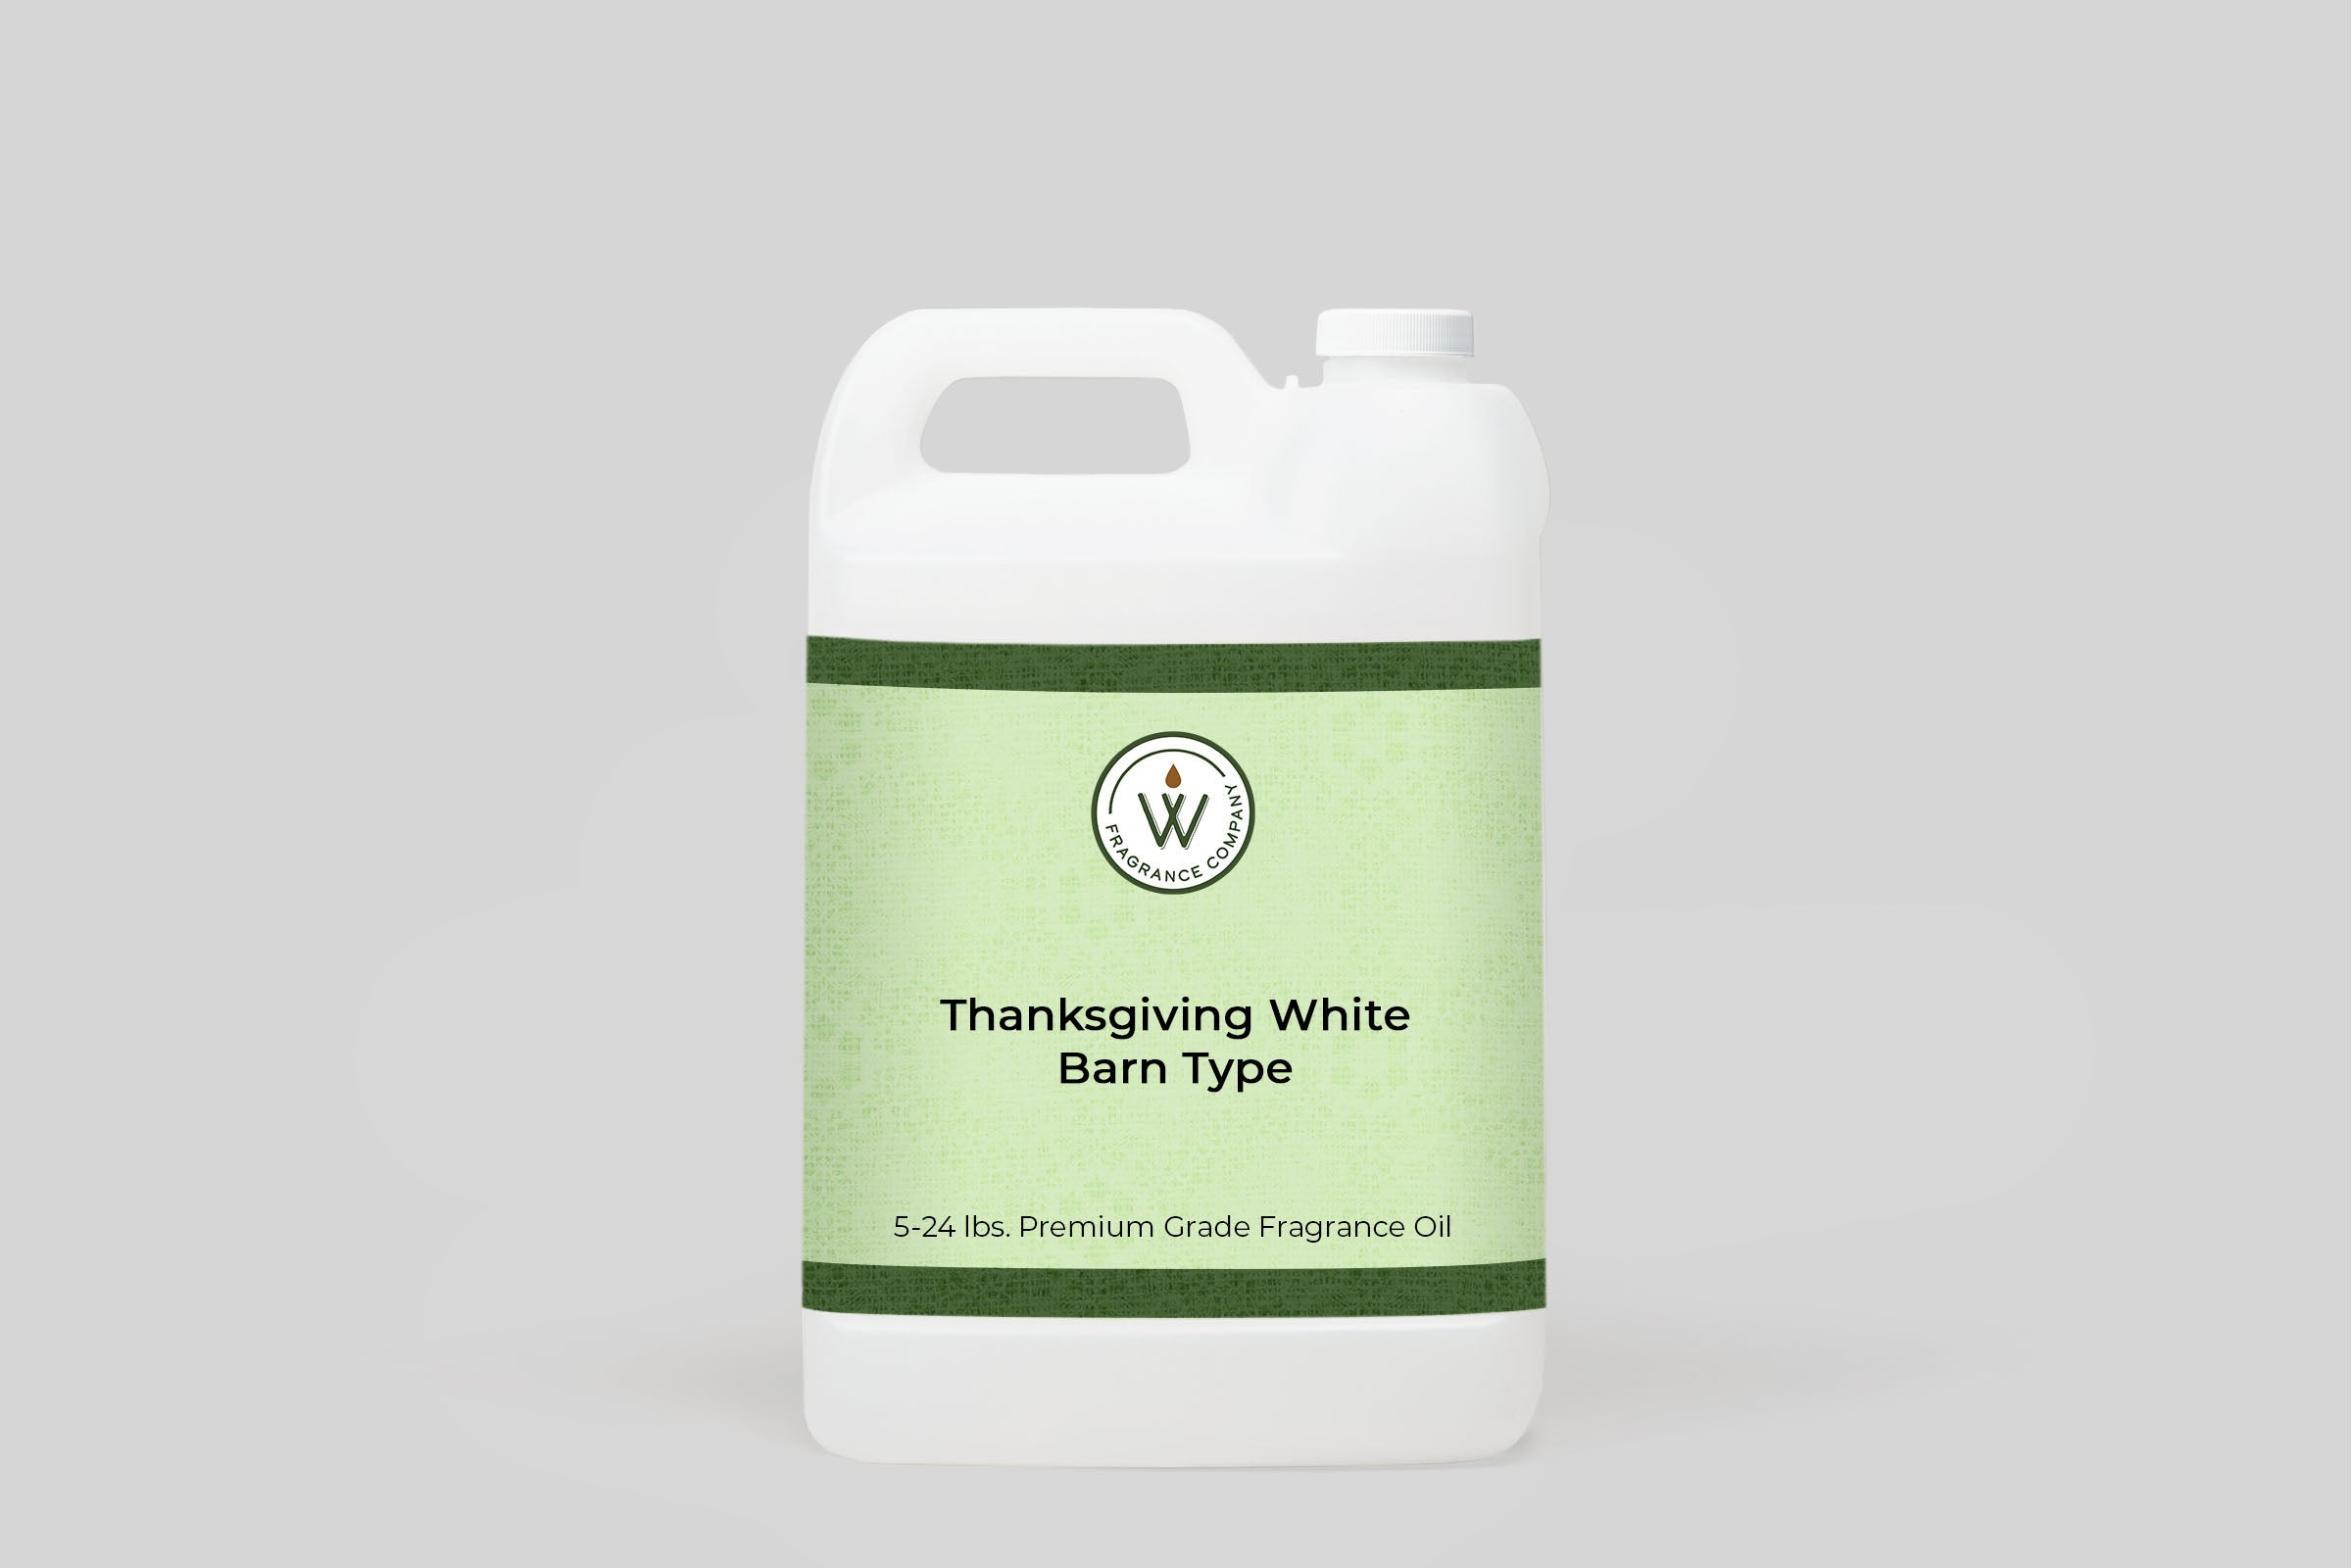 Thanksgiving White Barn Type Fragrance Oil